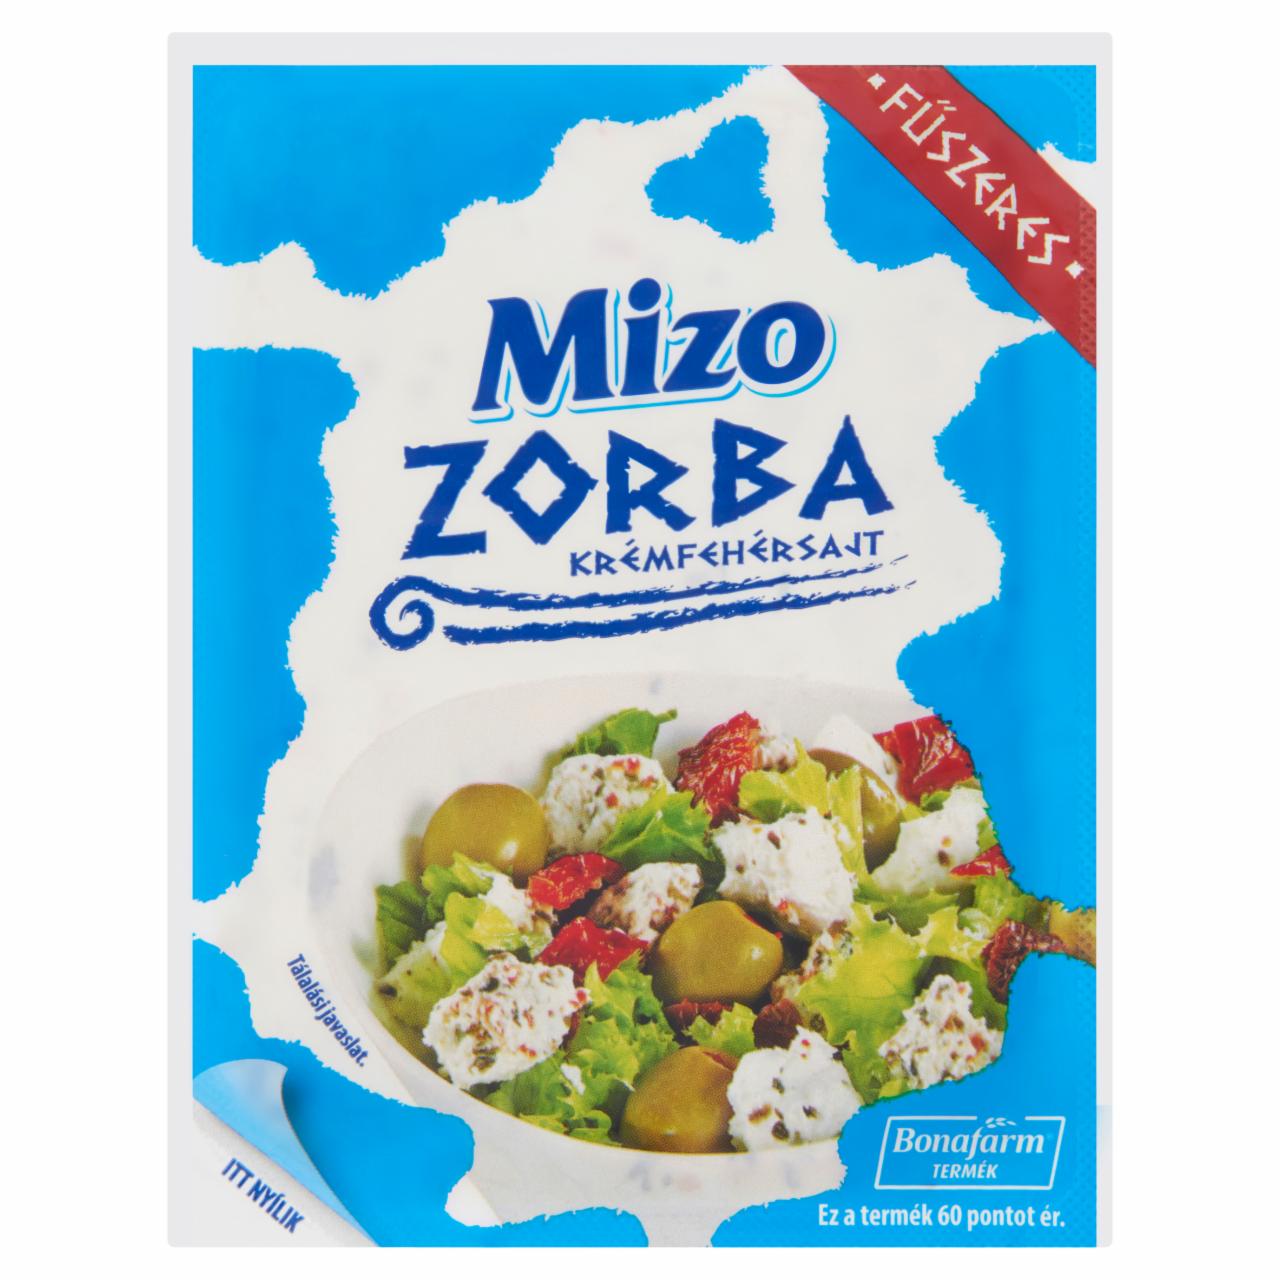 Képek - Mizo Zorba zsíros, lágy, fűszeres krémfehérsajt 250 g